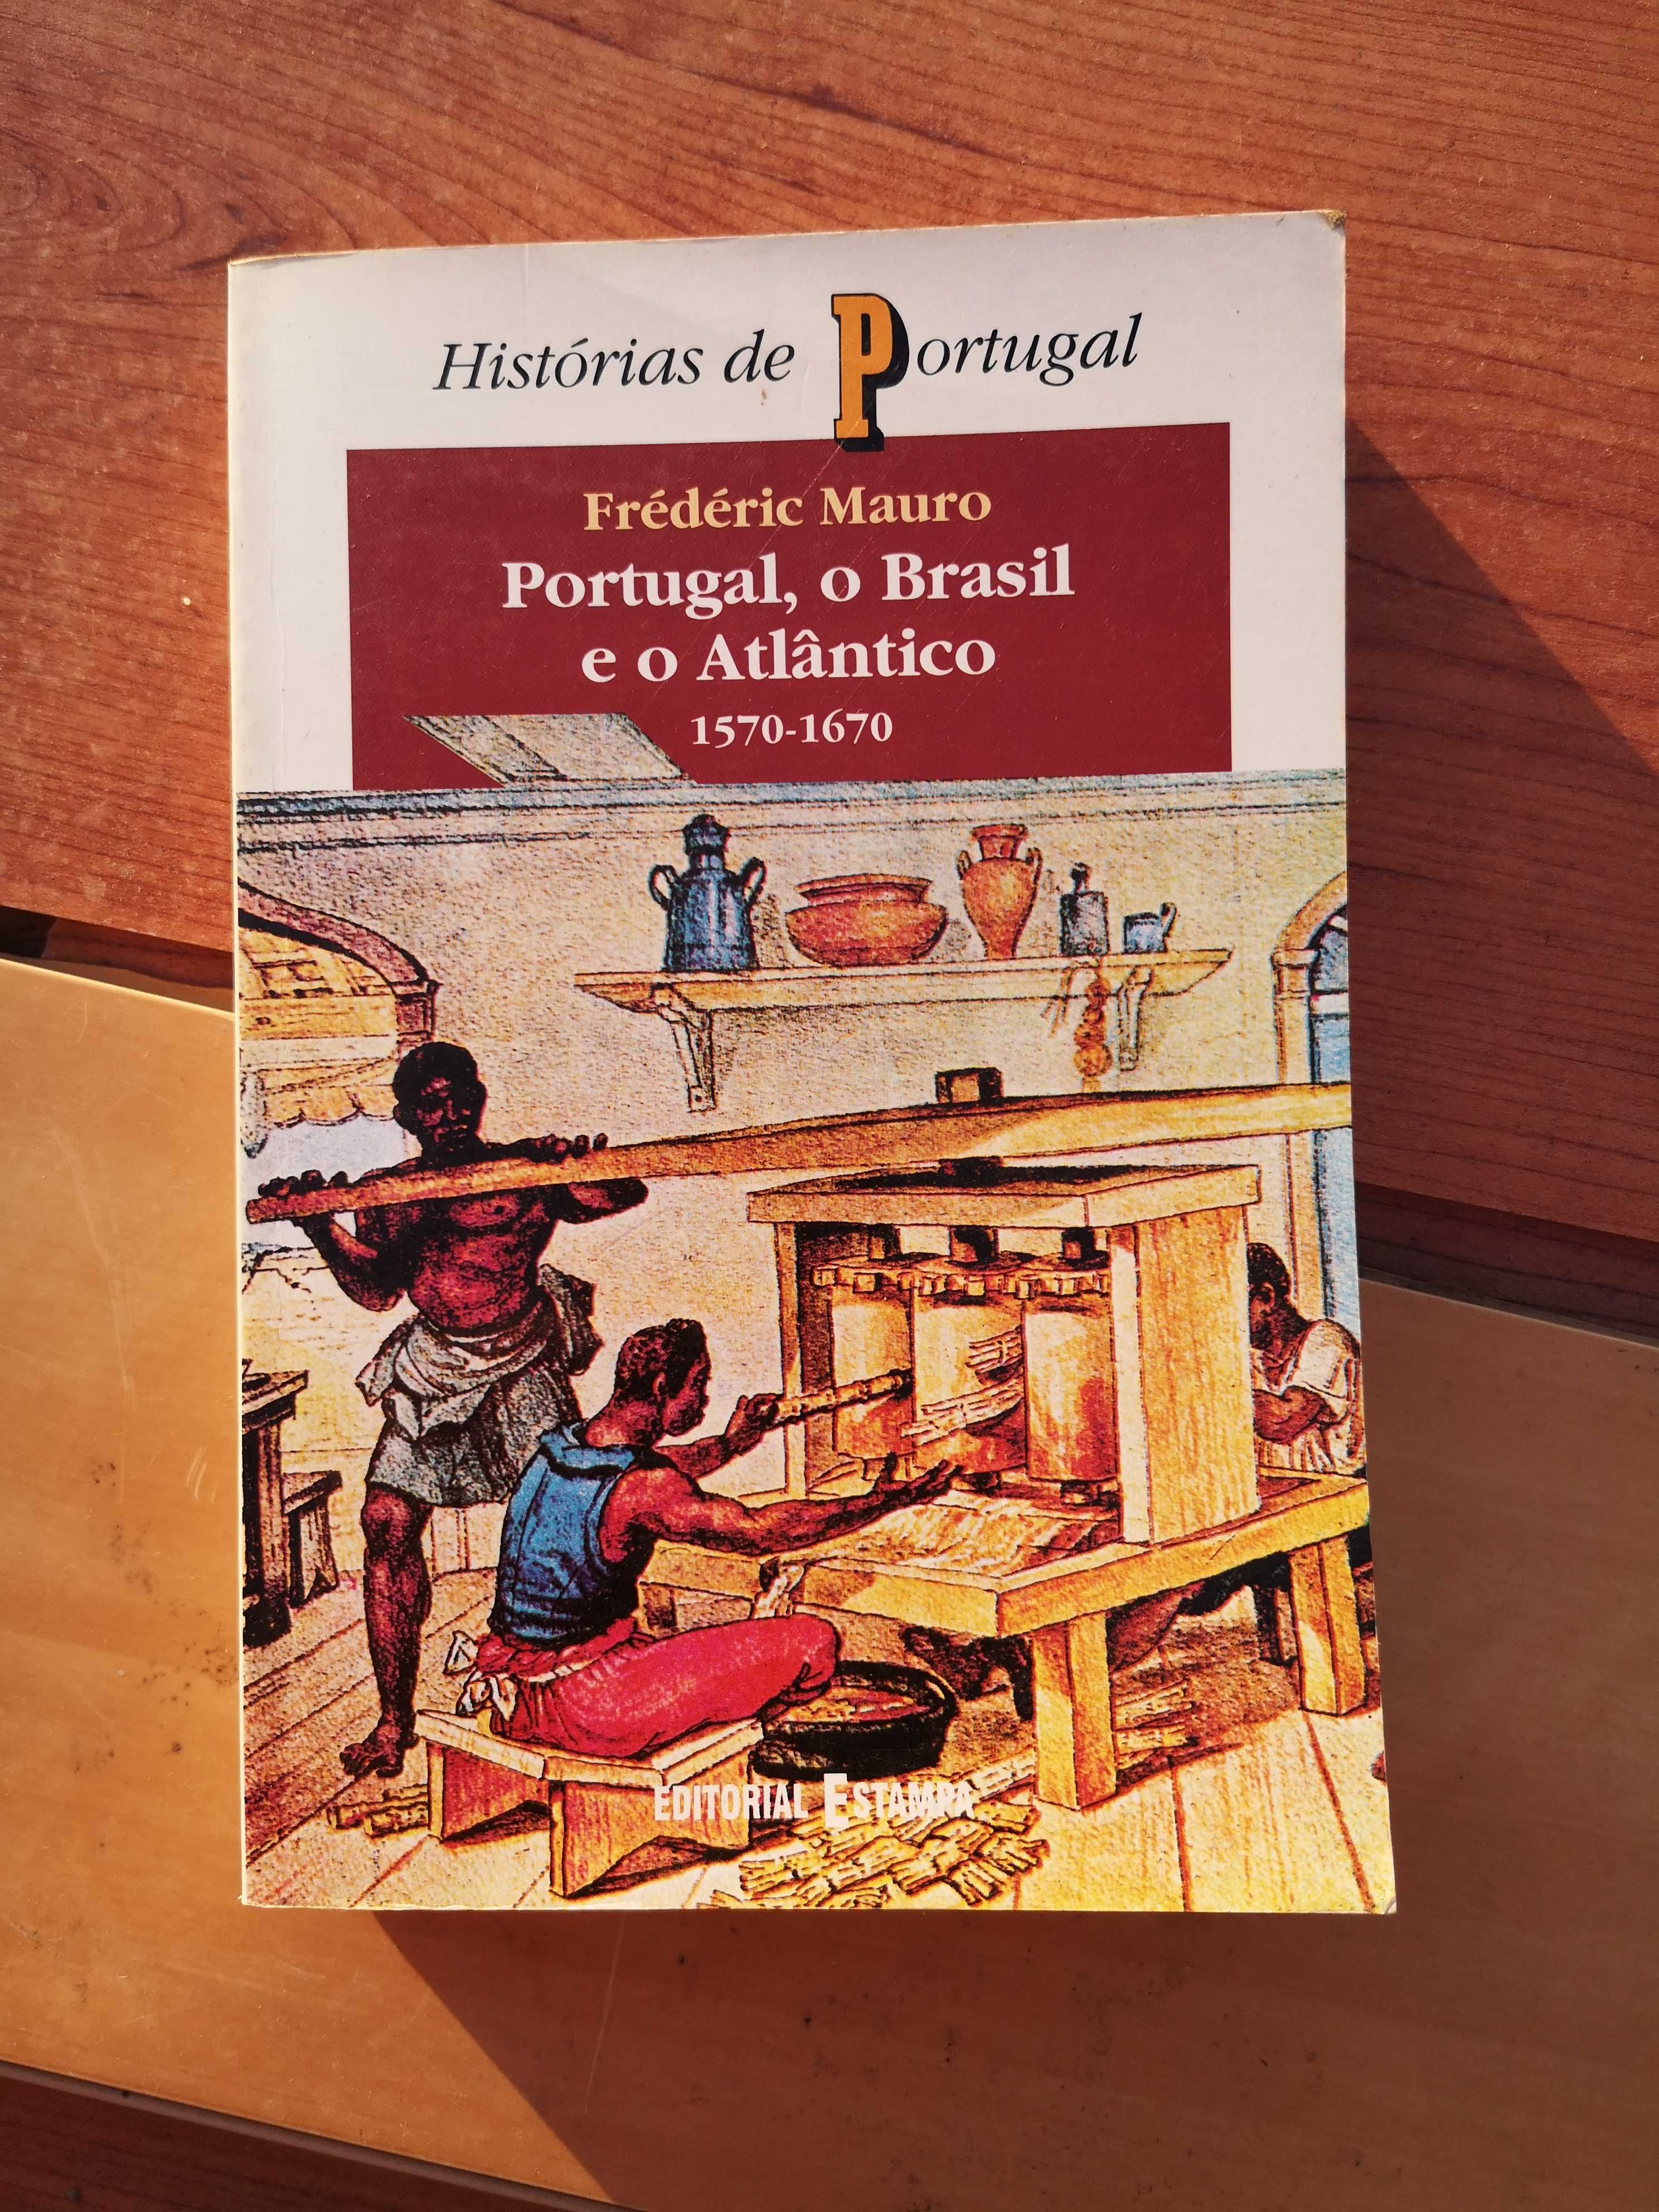 Portugal, O Brasil e o Atlântico - Frederic Mauro